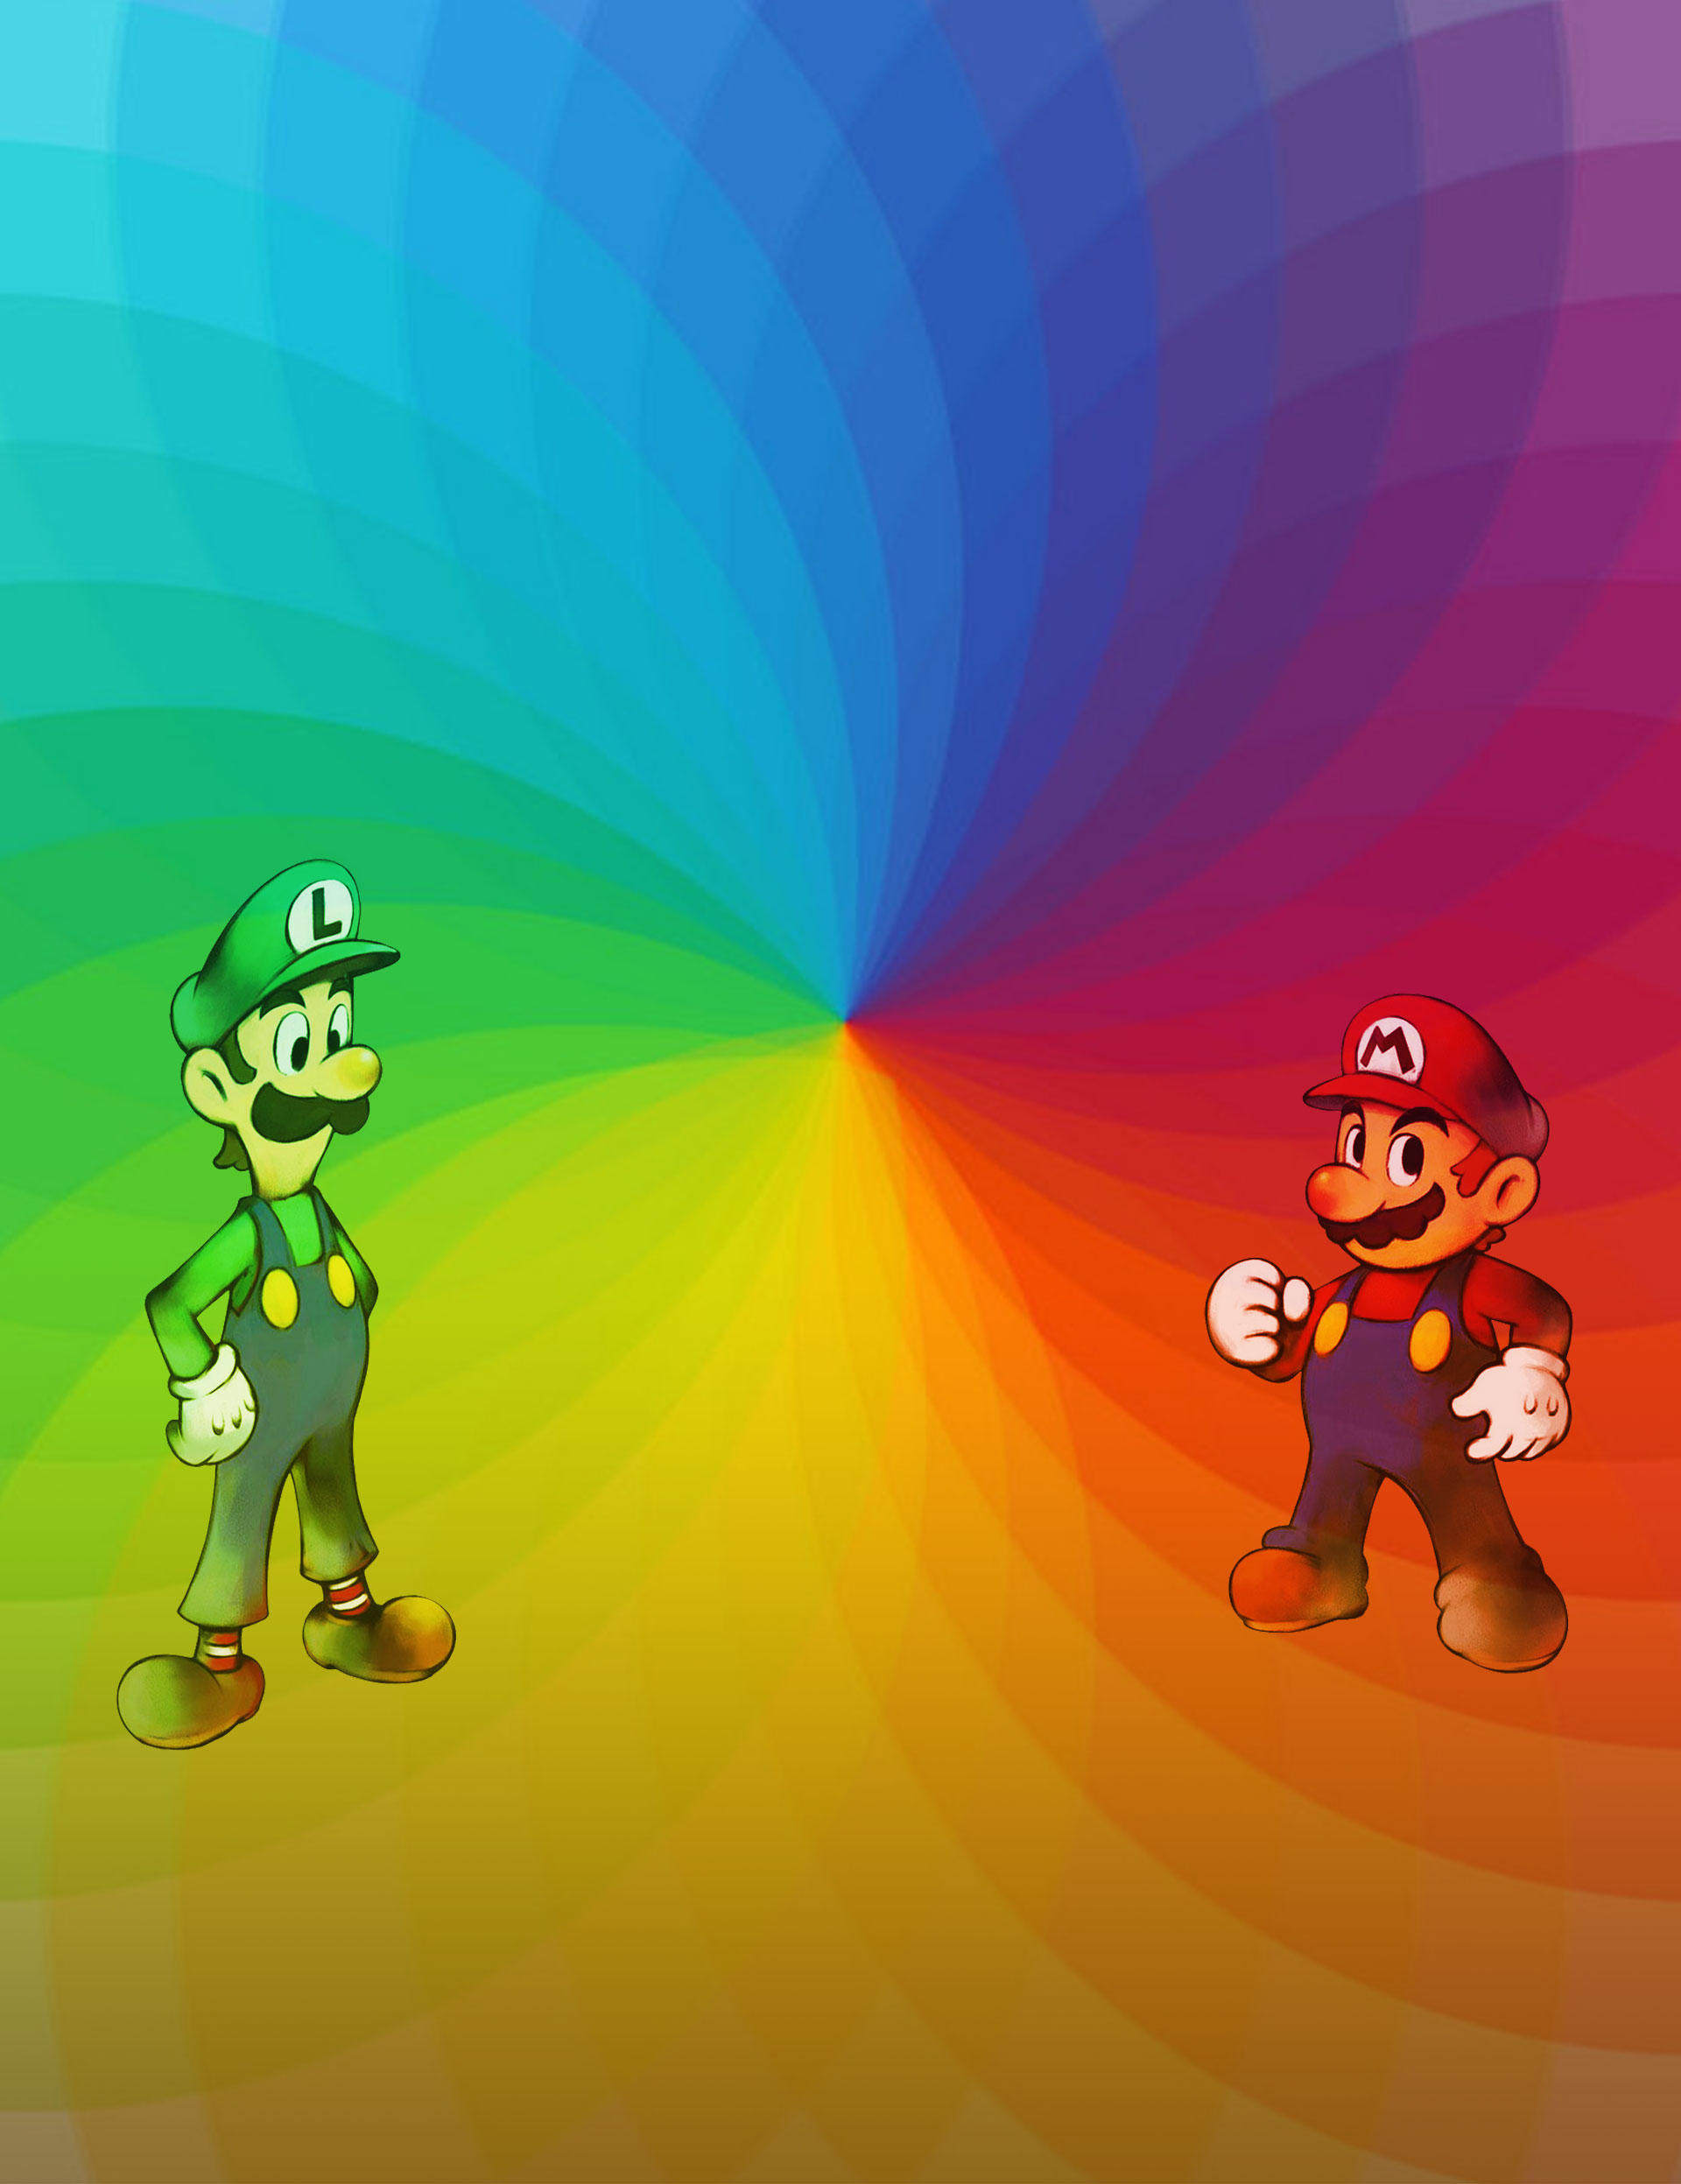 À esquerda: Circulo cromático evidenciando as cores complementares e